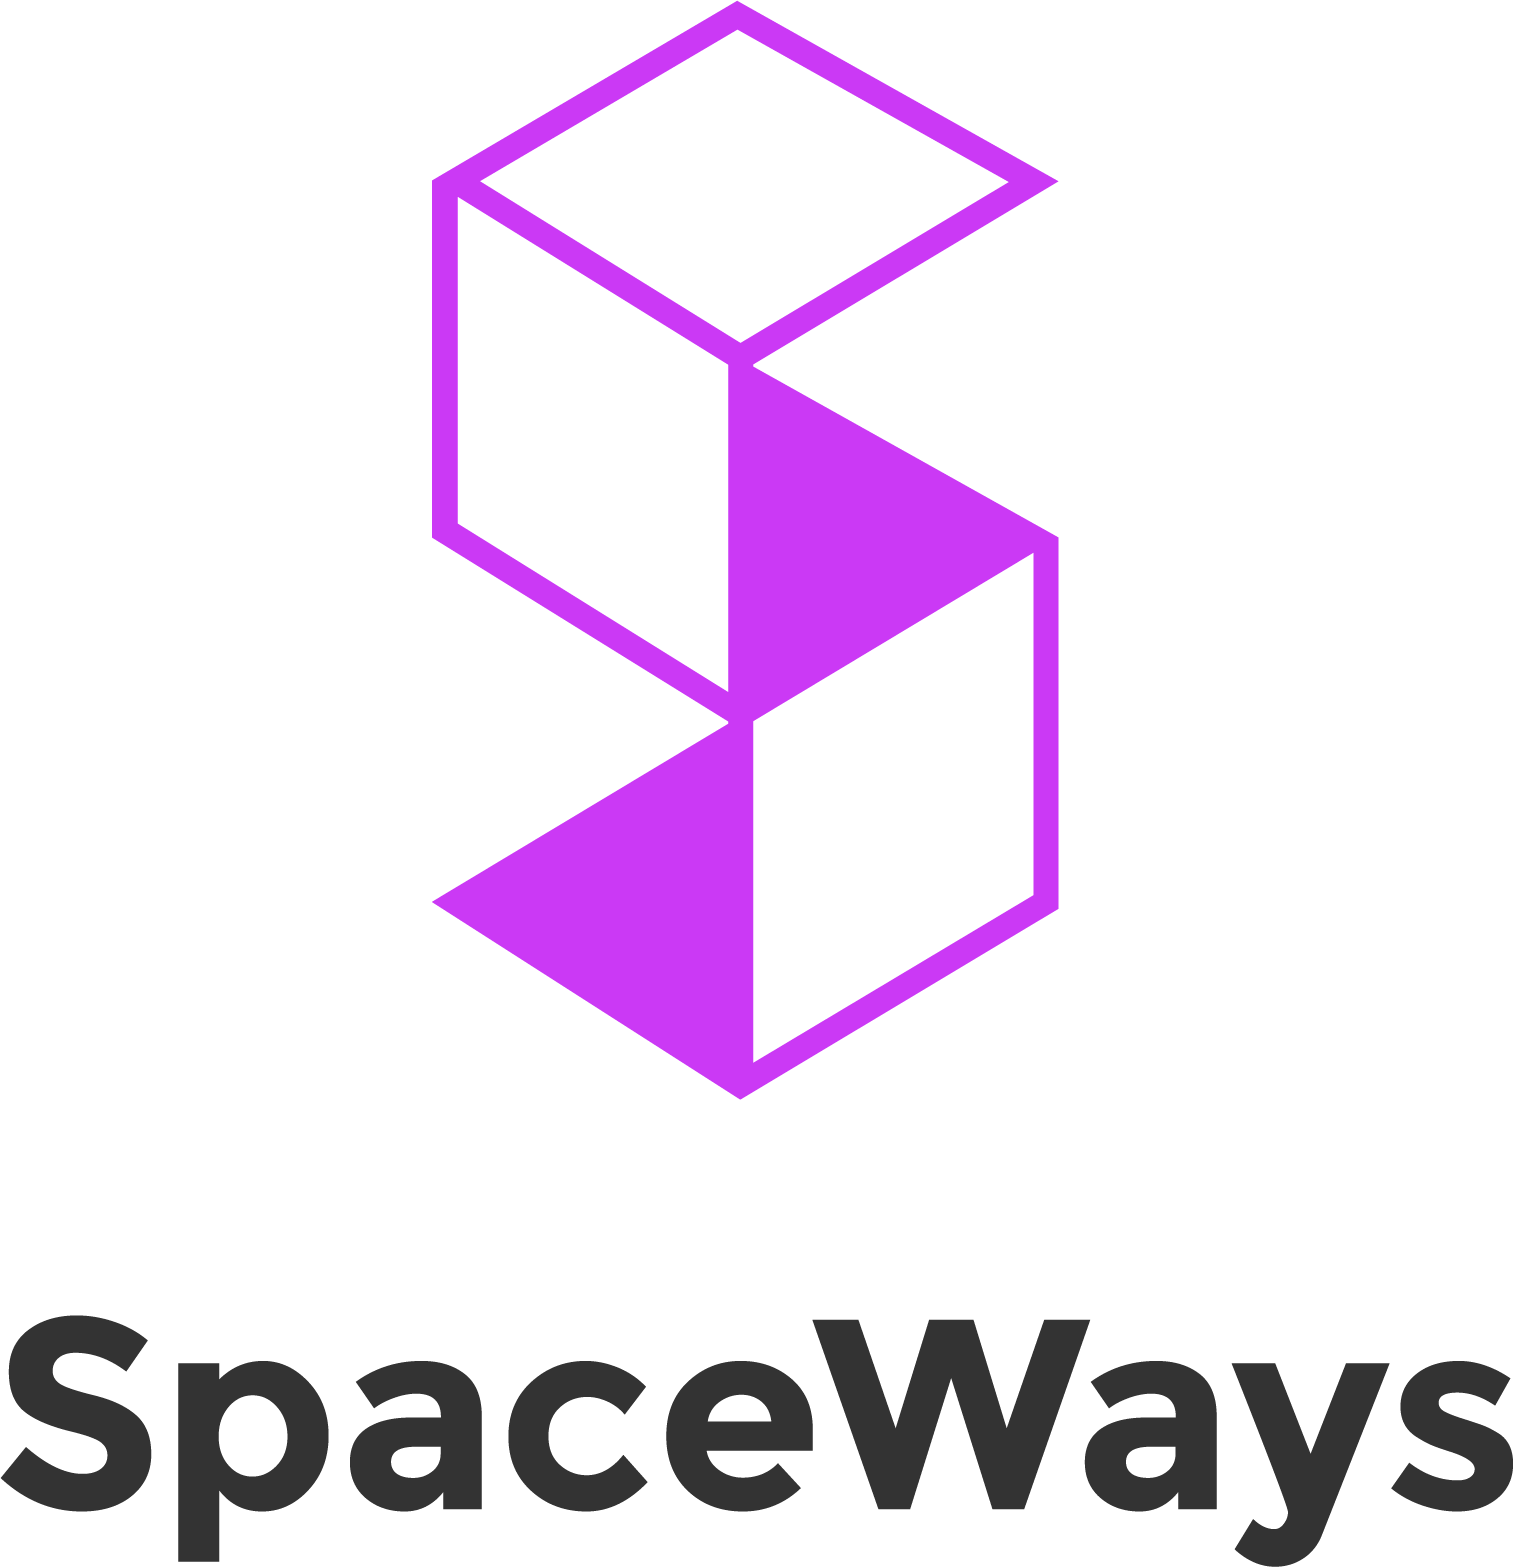 Spaceways #5